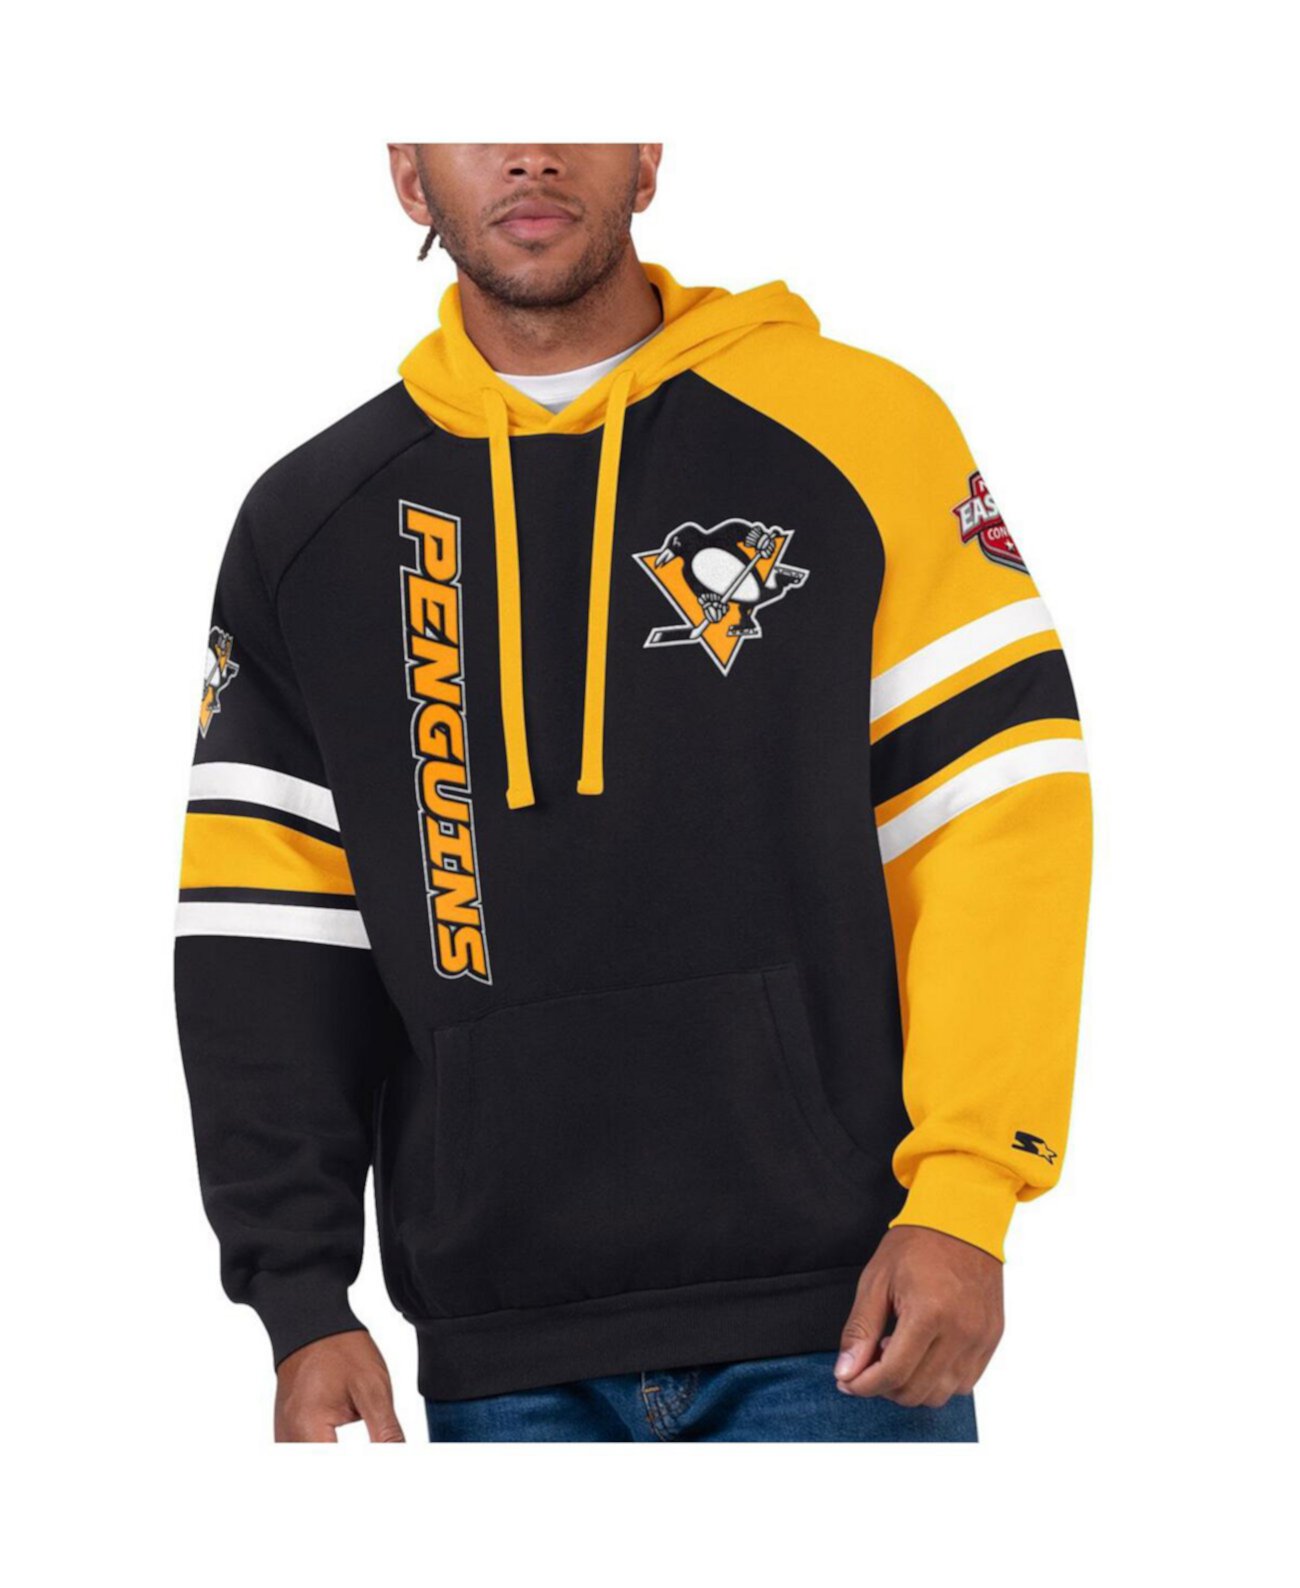 Мужской черный, золотой пуловер с капюшоном Pittsburgh Penguins Gauntlet реглан Starter